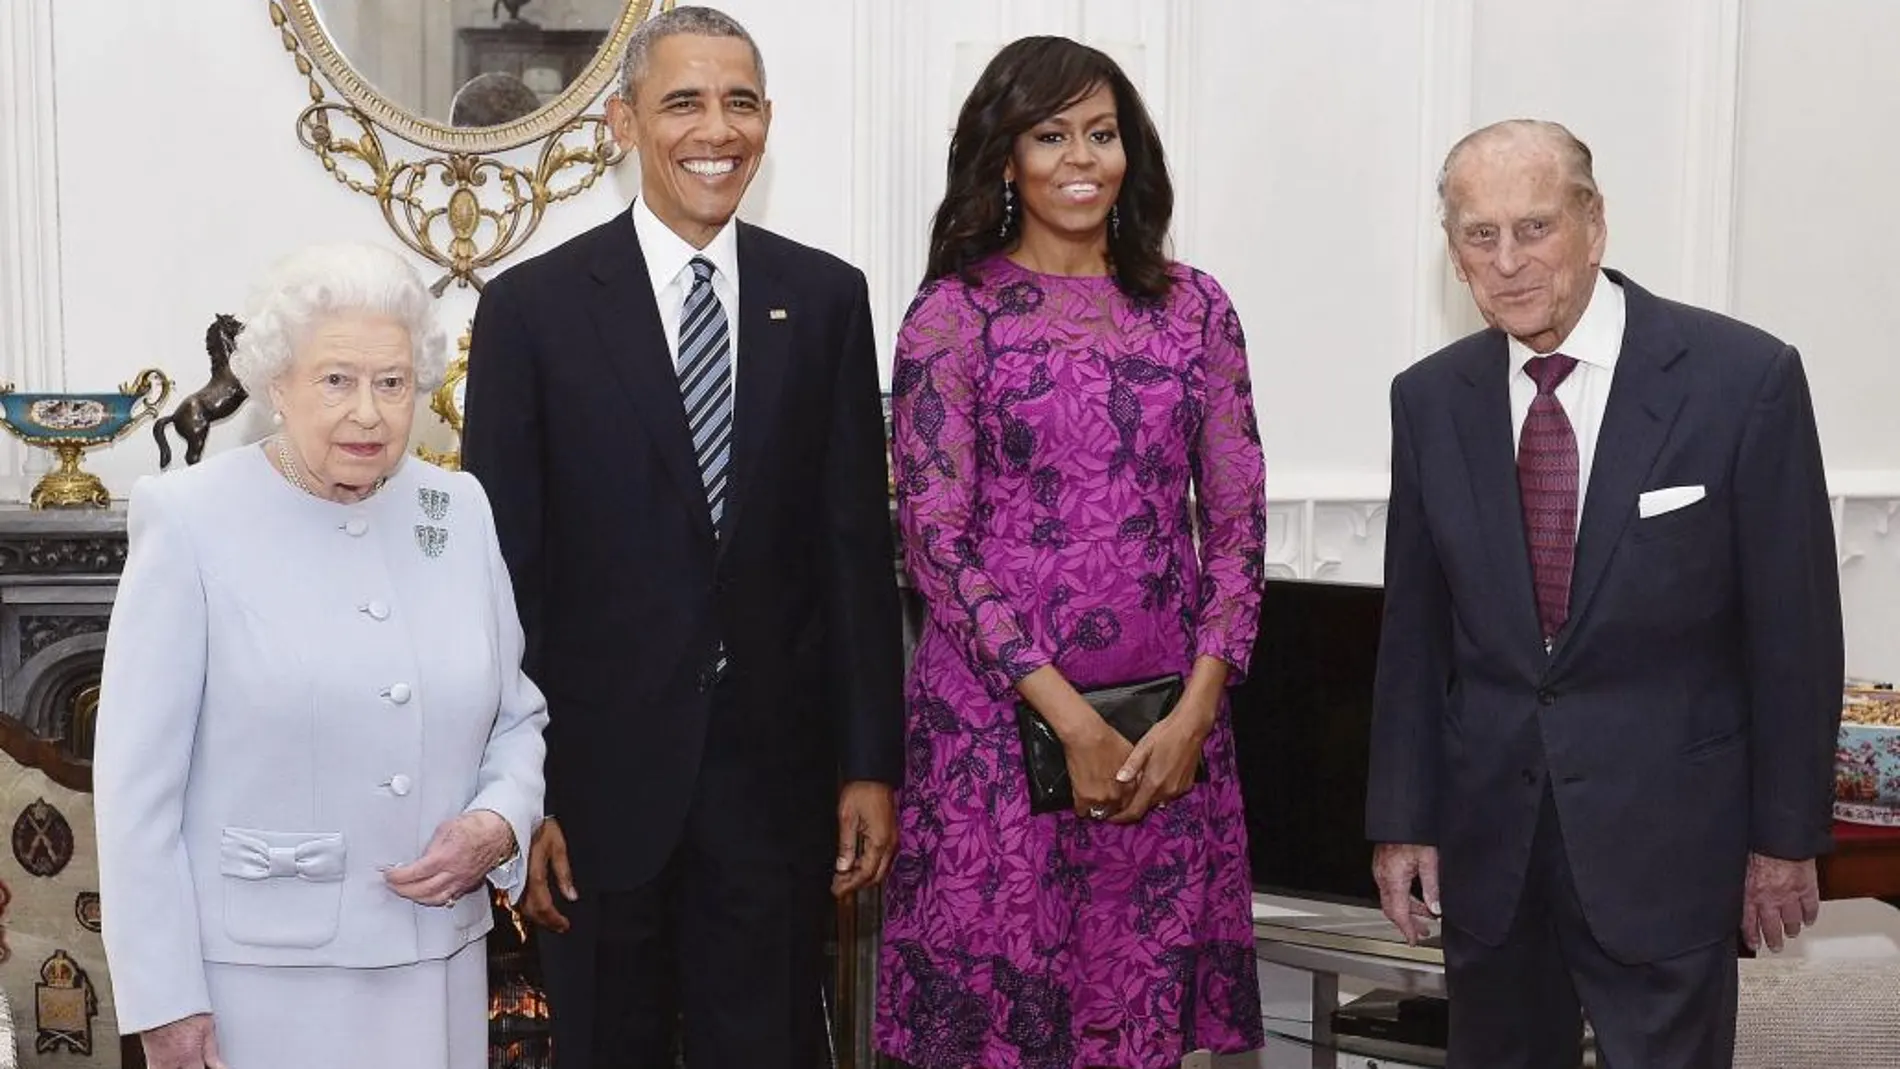 La reina Isabel II de Inglaterra, el presidente de Estados Unidos, Barack Obama y su esposa, Michelle, y el príncipe Felipe de Edimburgo